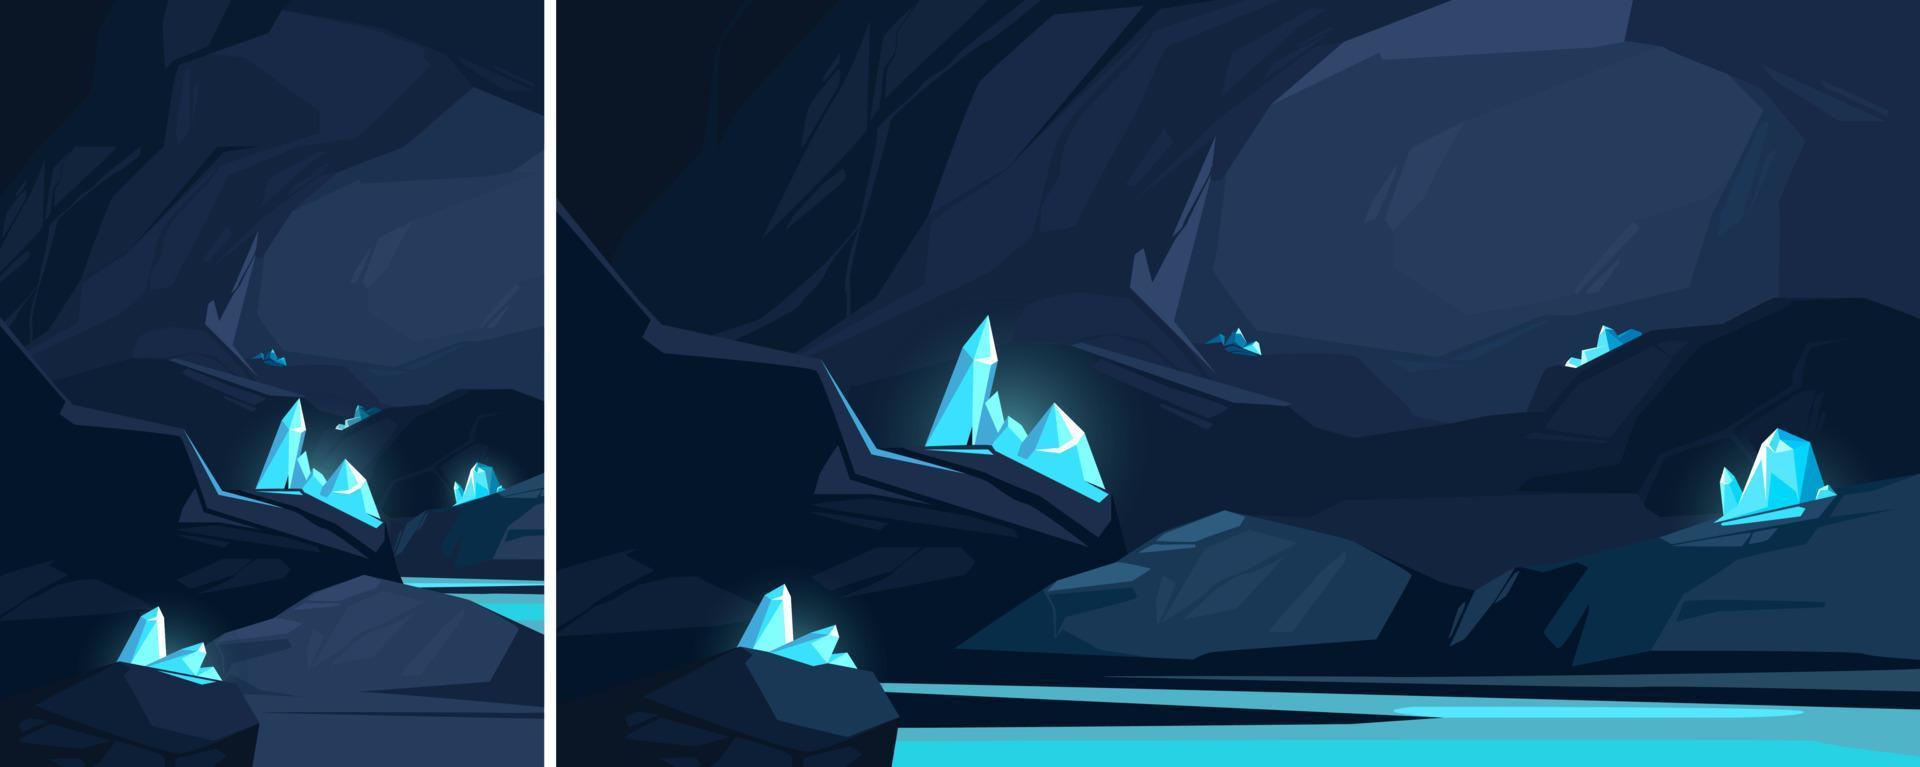 grotta med blå kristaller. underjordisk plats i annorlunda format. vektor